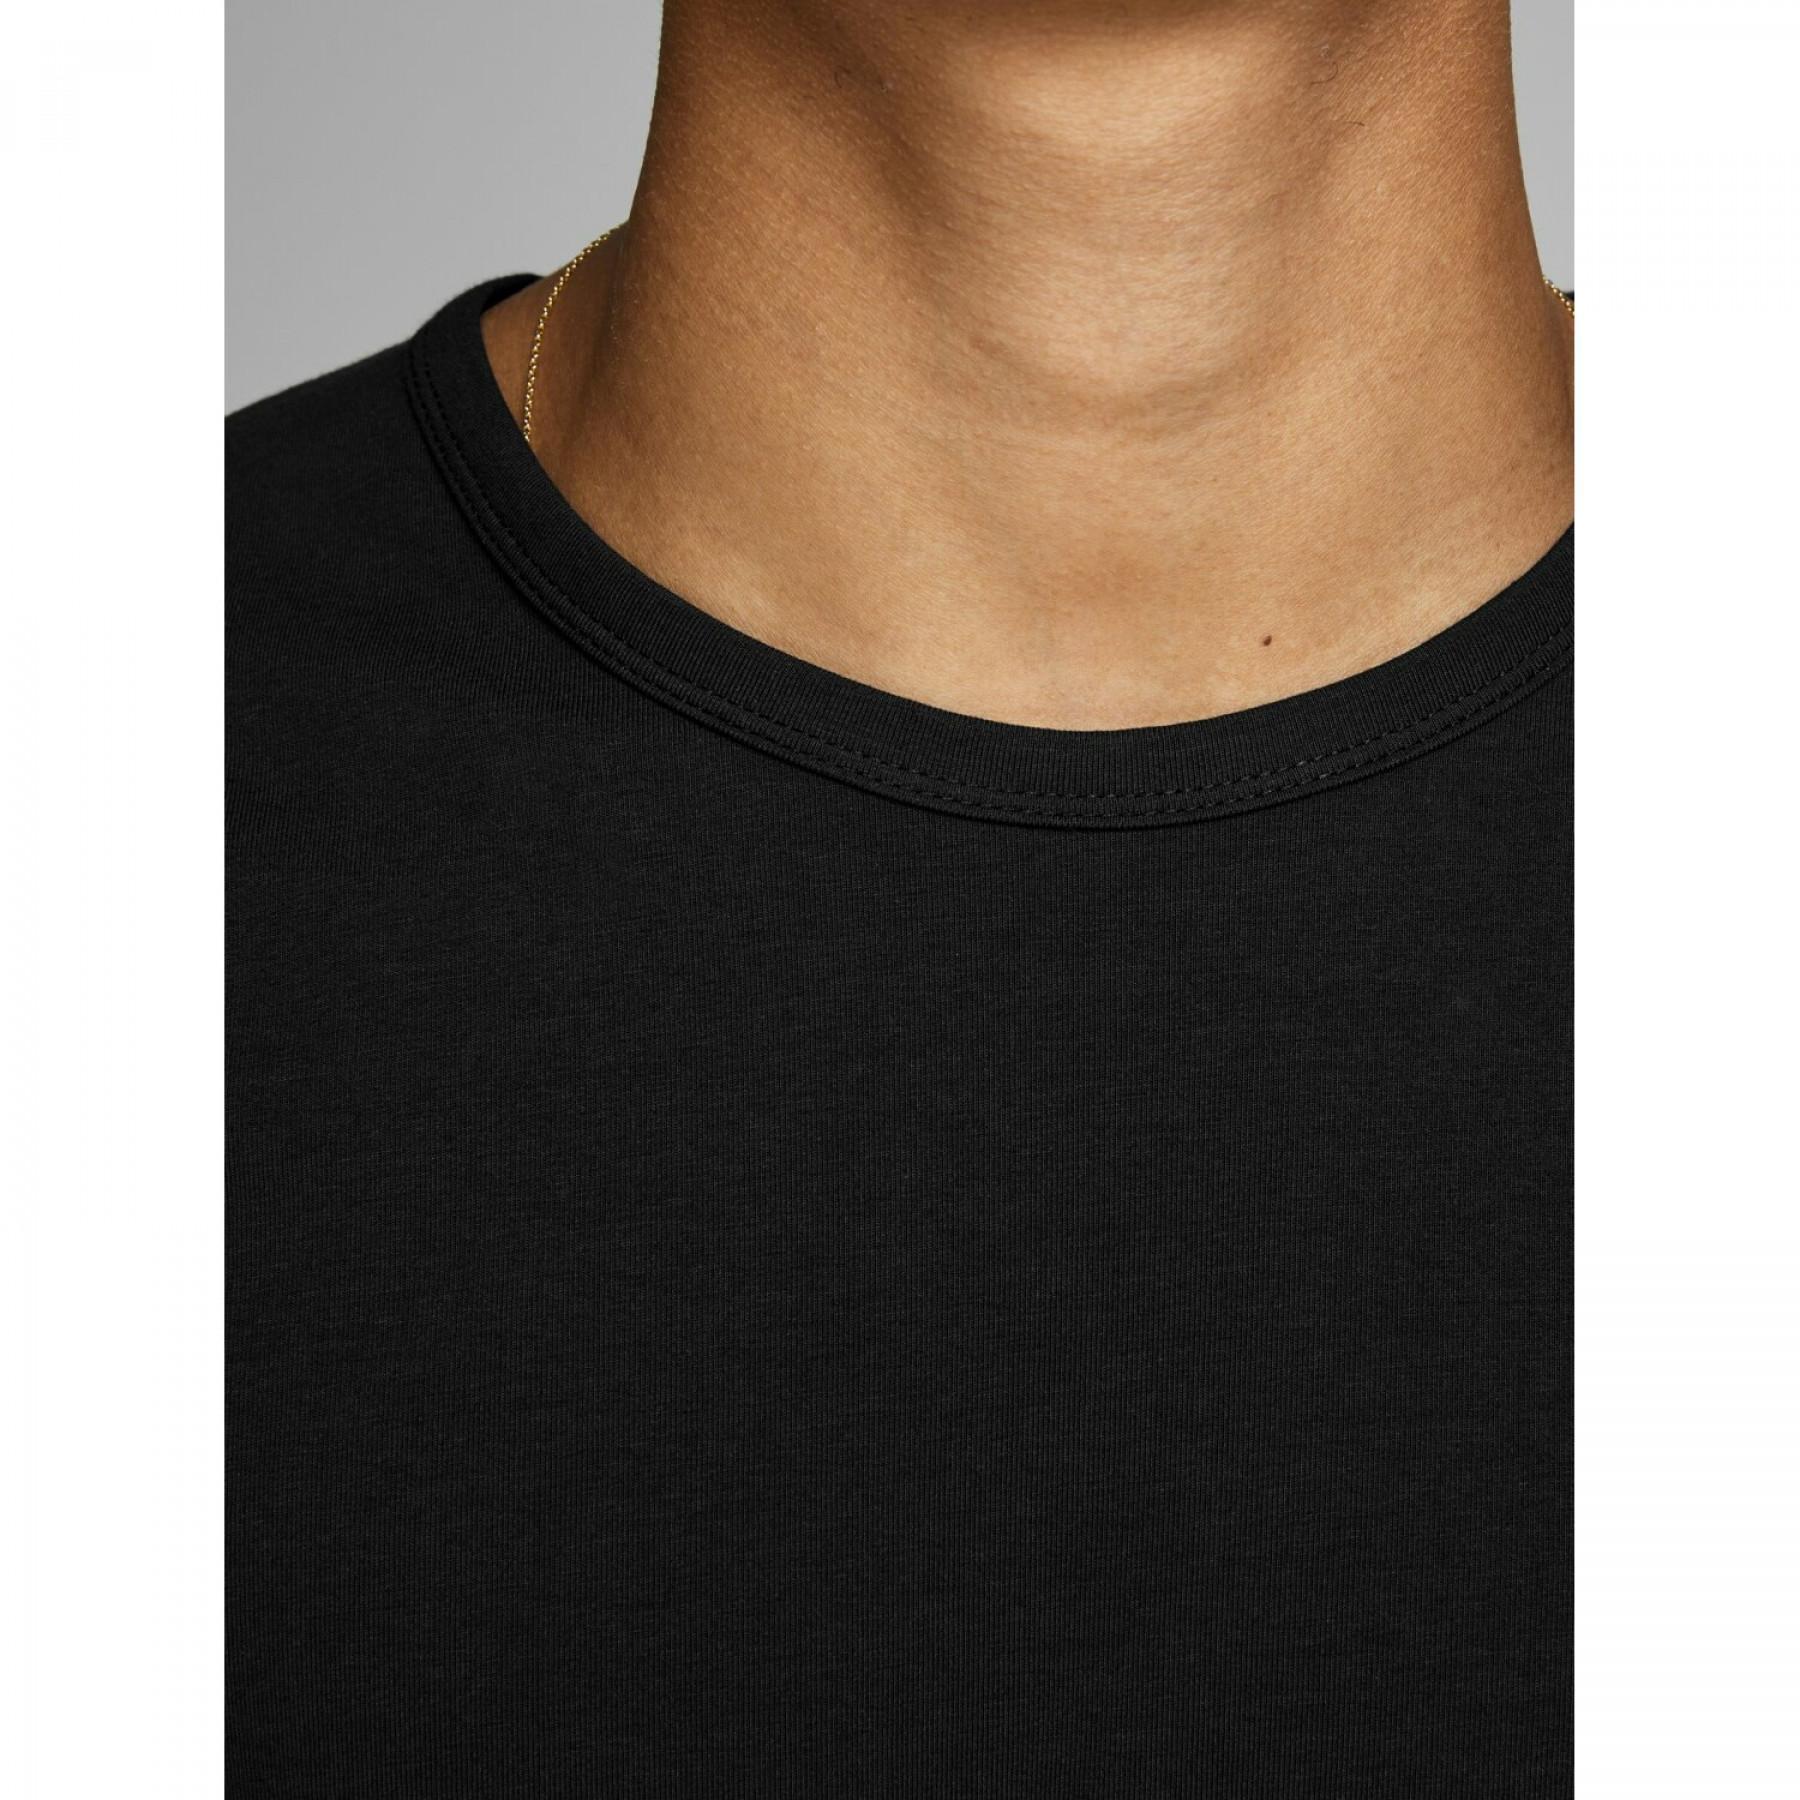 Camiseta Jack & Jones Basic o-neck